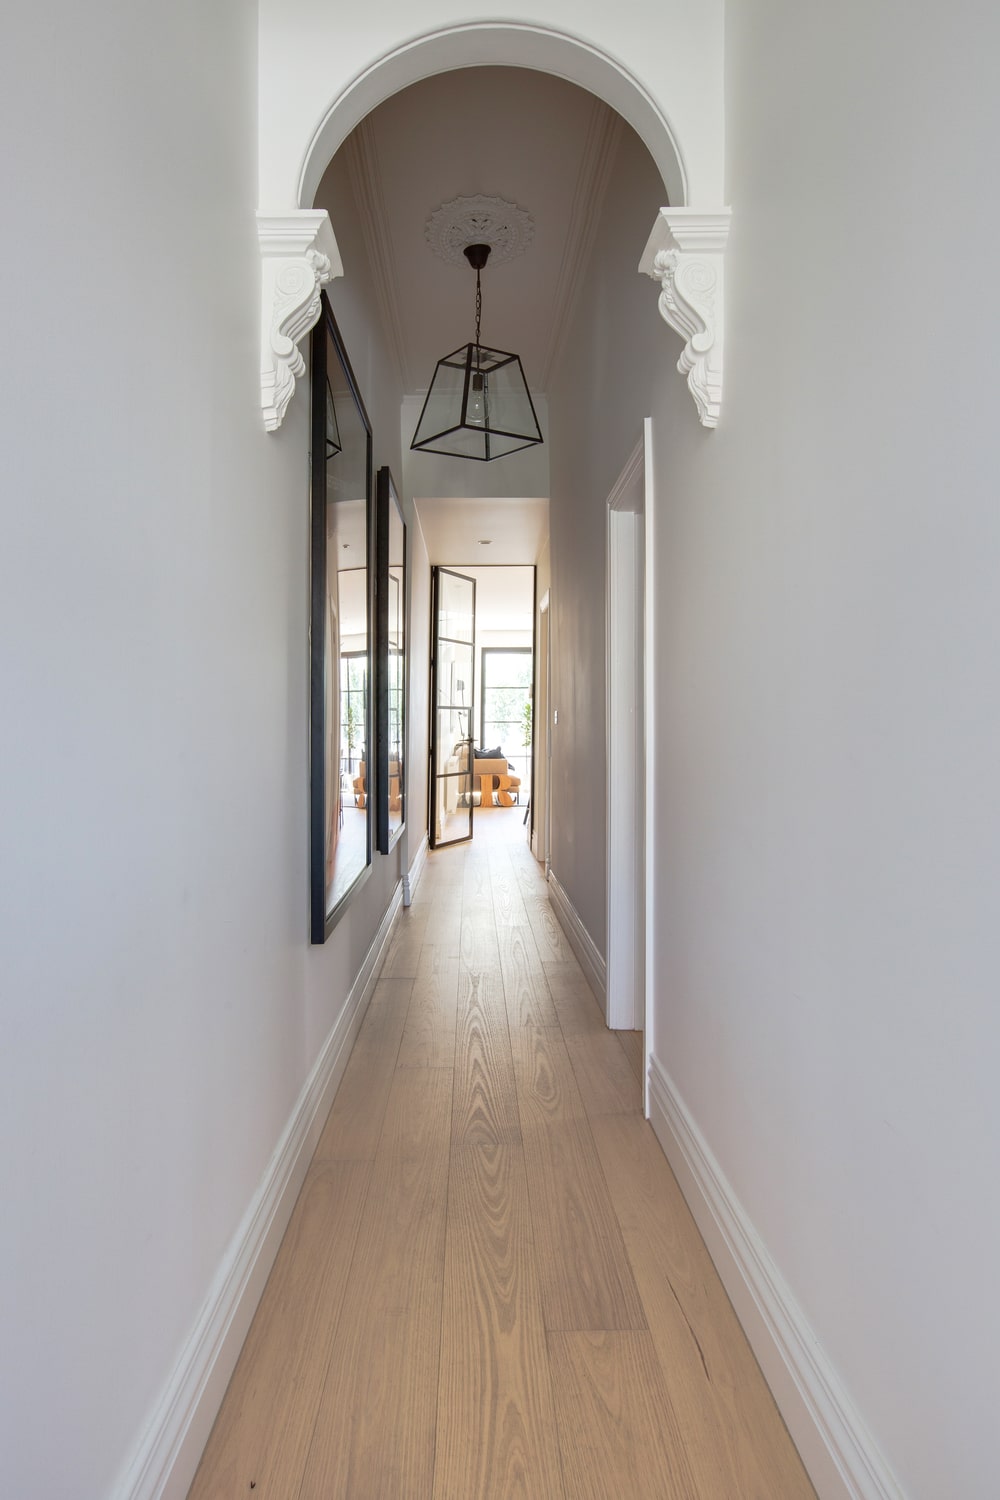 这是一个简单的走廊式门厅，白色的墙壁，白色的拱门和浅色的硬木地板，与黑色灯笼般的吊灯和壁挂式艺术品的框架形成对比。